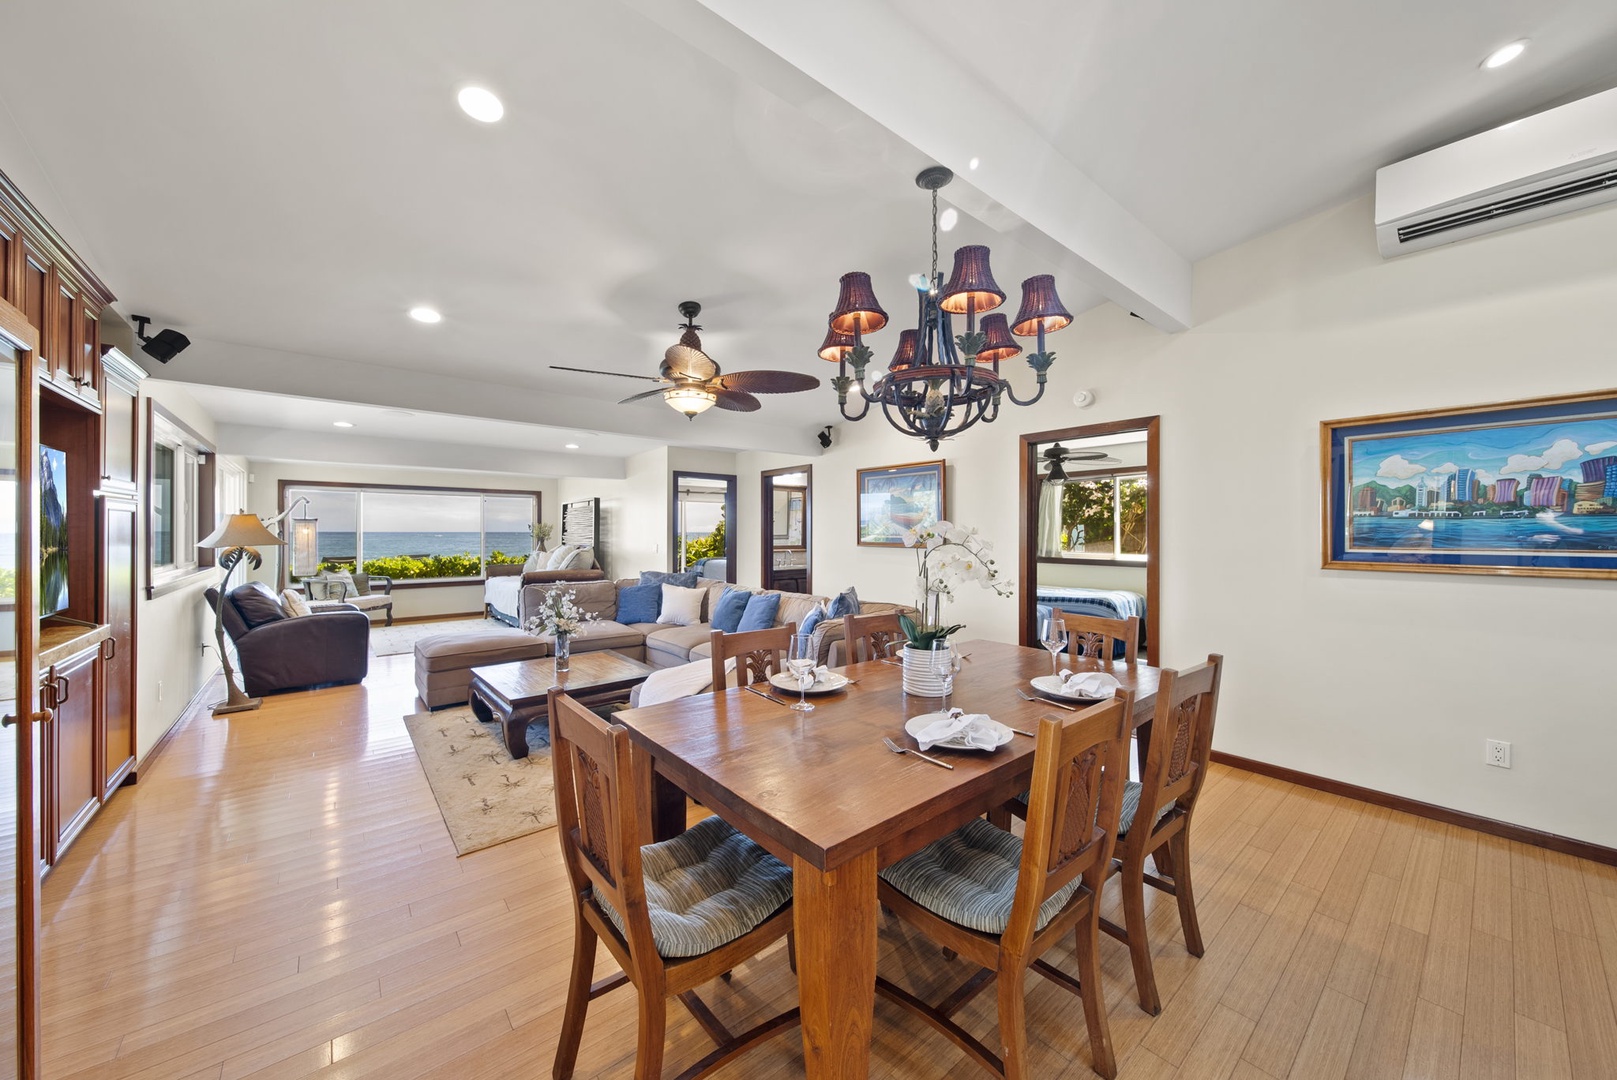 Waialua Vacation Rentals, Hale Oka Nunu - The dining room opens up to the living area